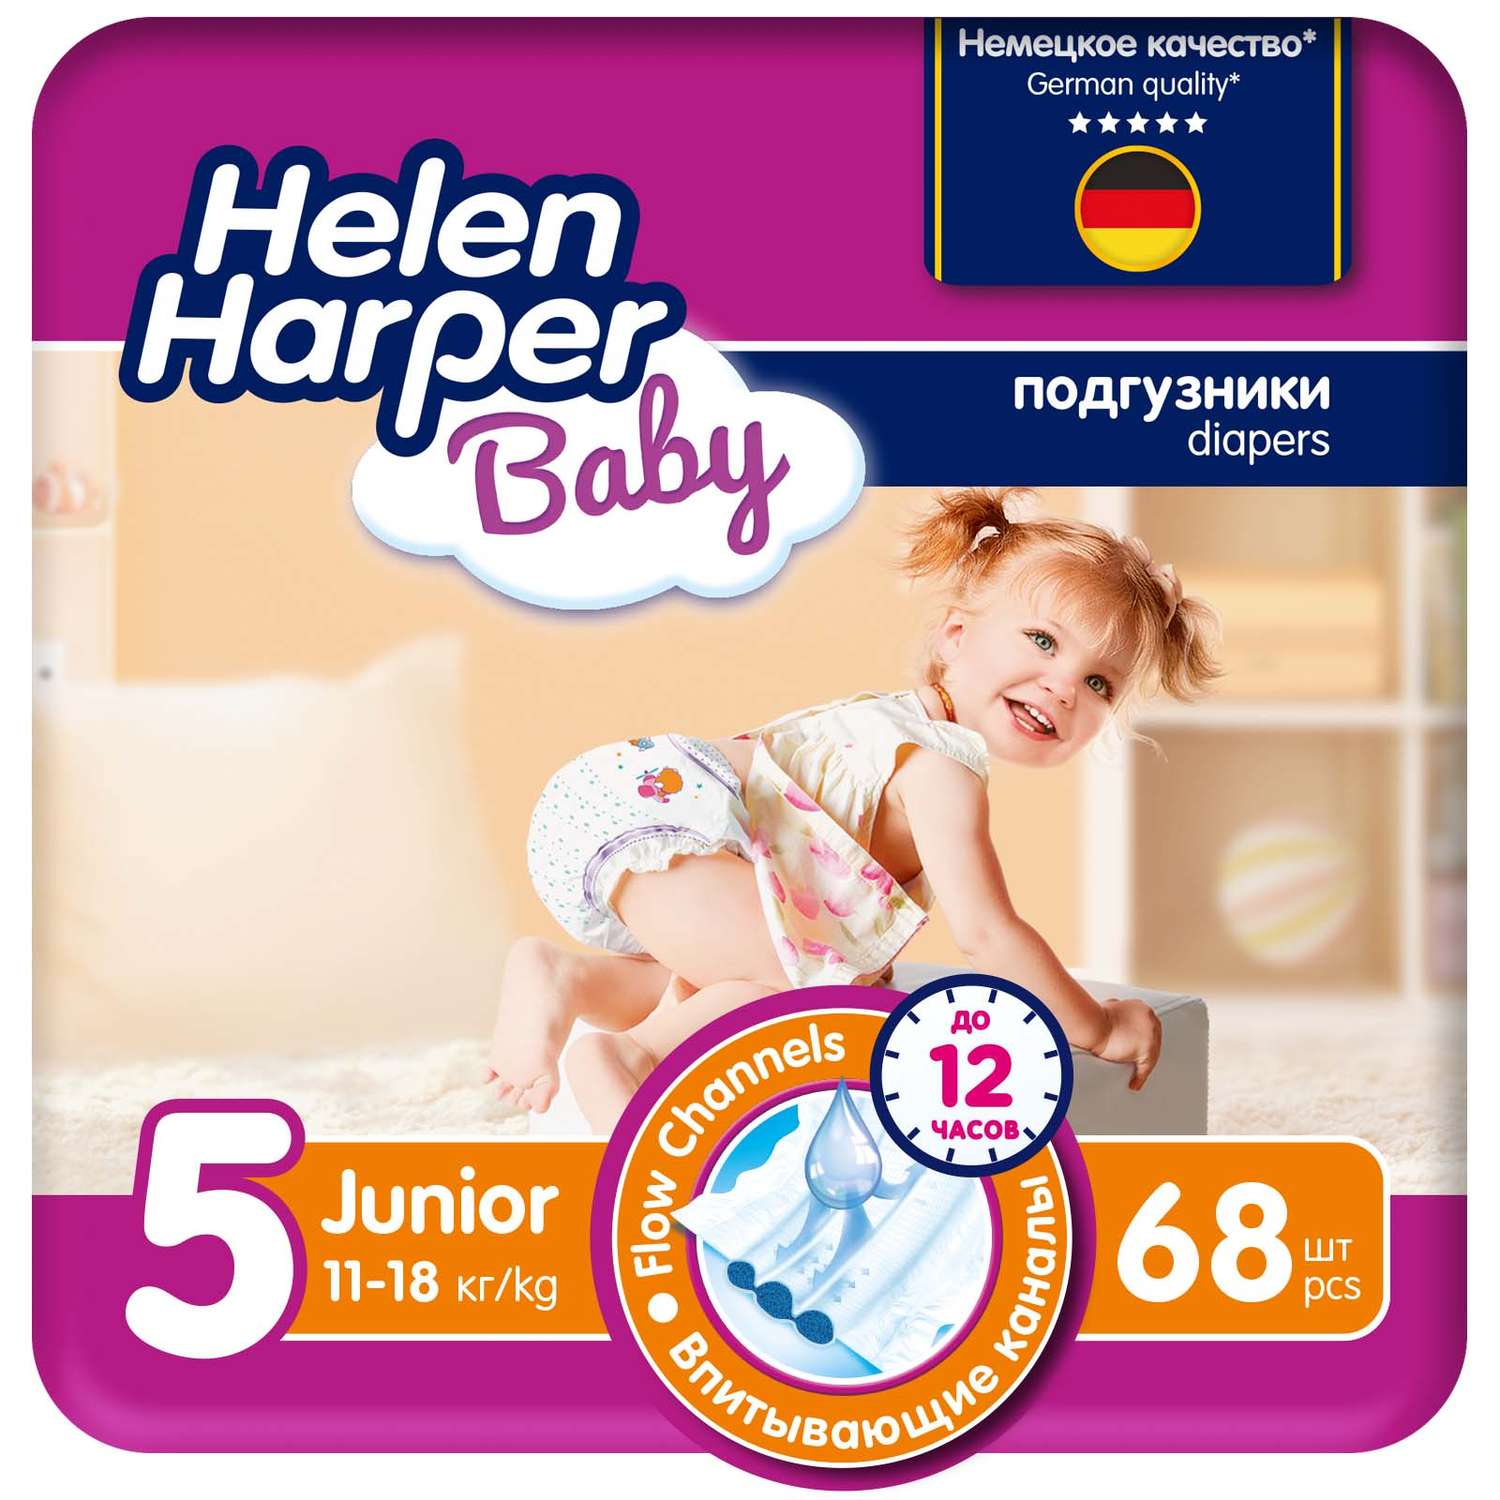 Подгузники детские Helen Harper Baby размер 5 Junior 11-18 кг 68 шт. - фото 1